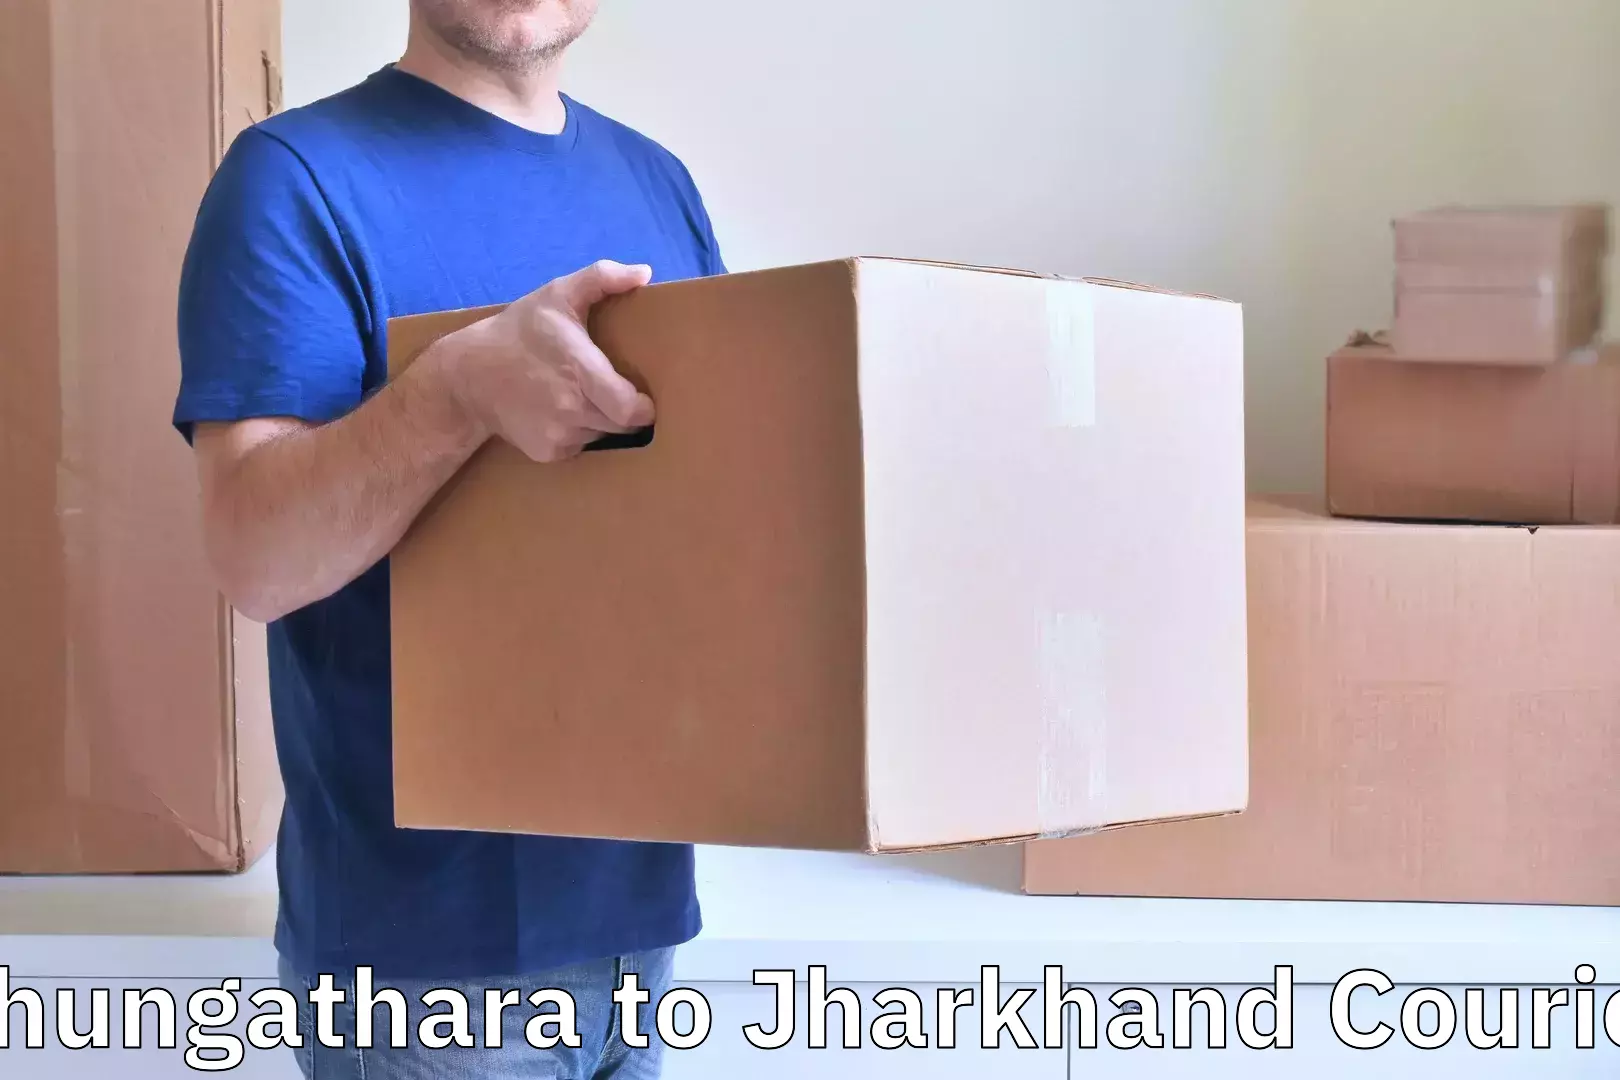 Door-to-door baggage service Chungathara to Barharwa